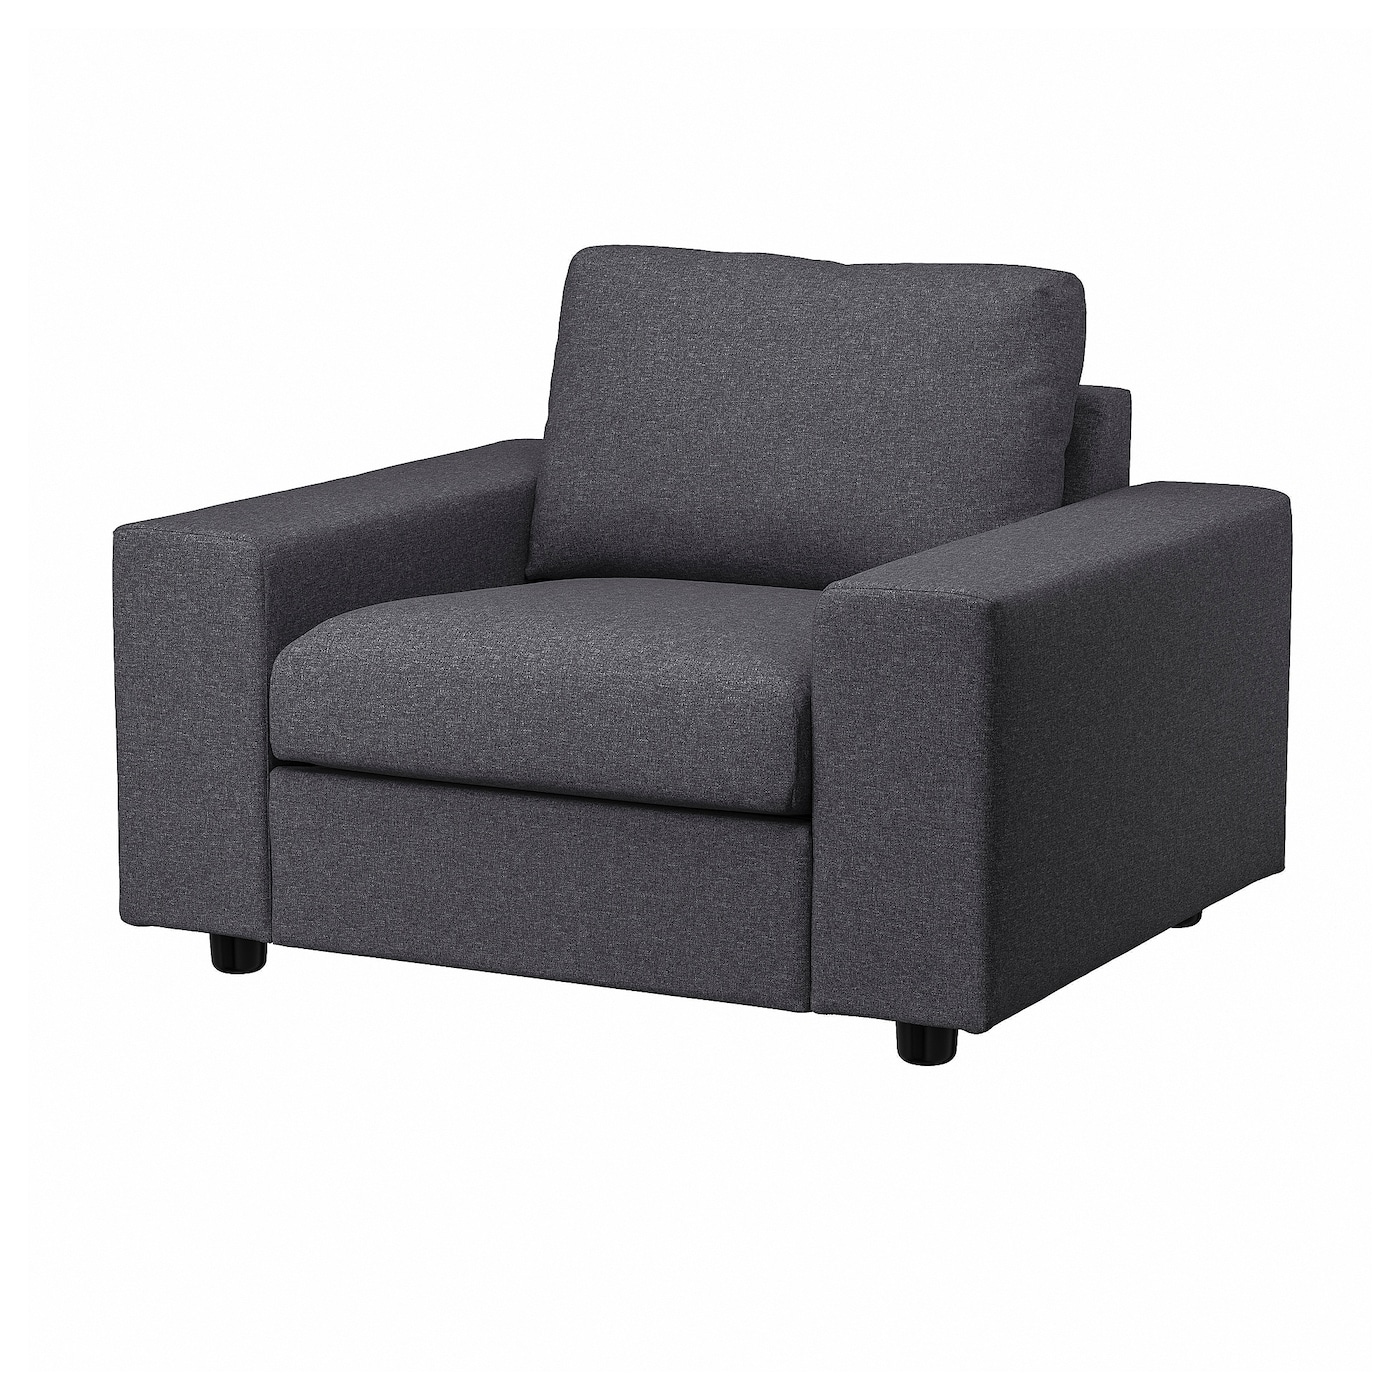 ВИМЛЕ Кресло, с широкими подлокотниками/Гуннаред средний серый VIMLE IKEA кресло мягкое тутси зайчик серый